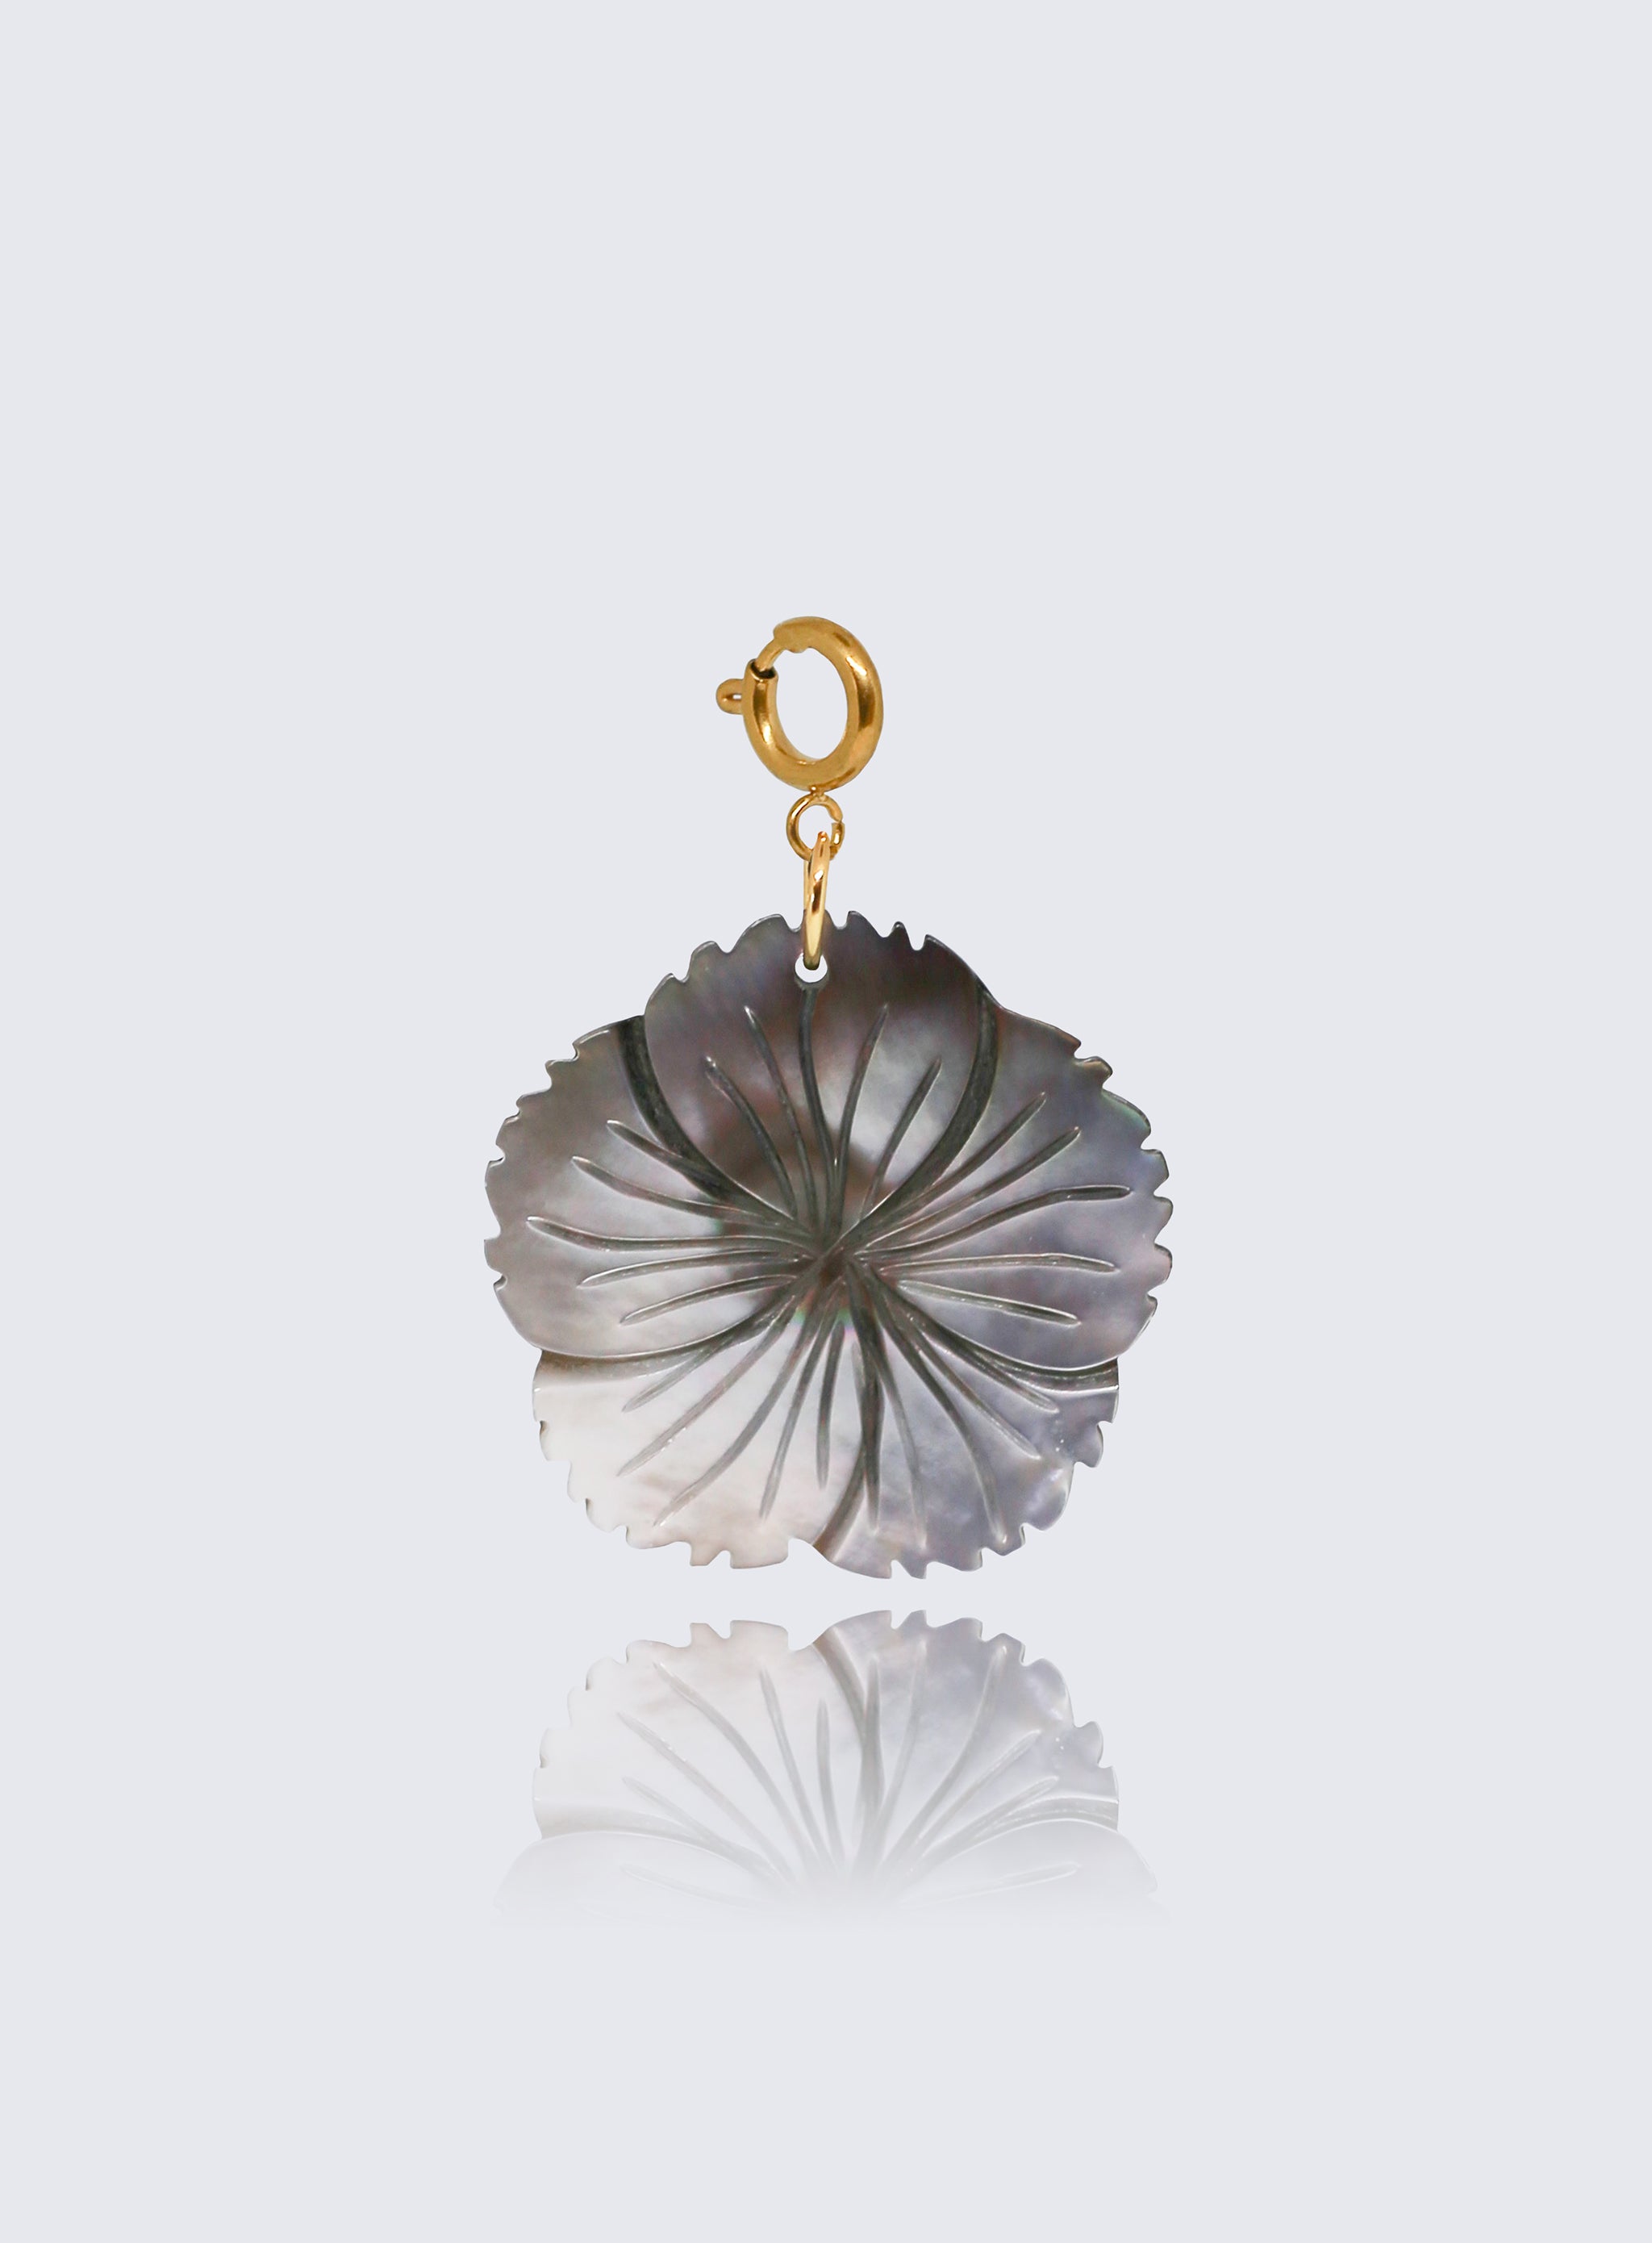 Shell flower pendant